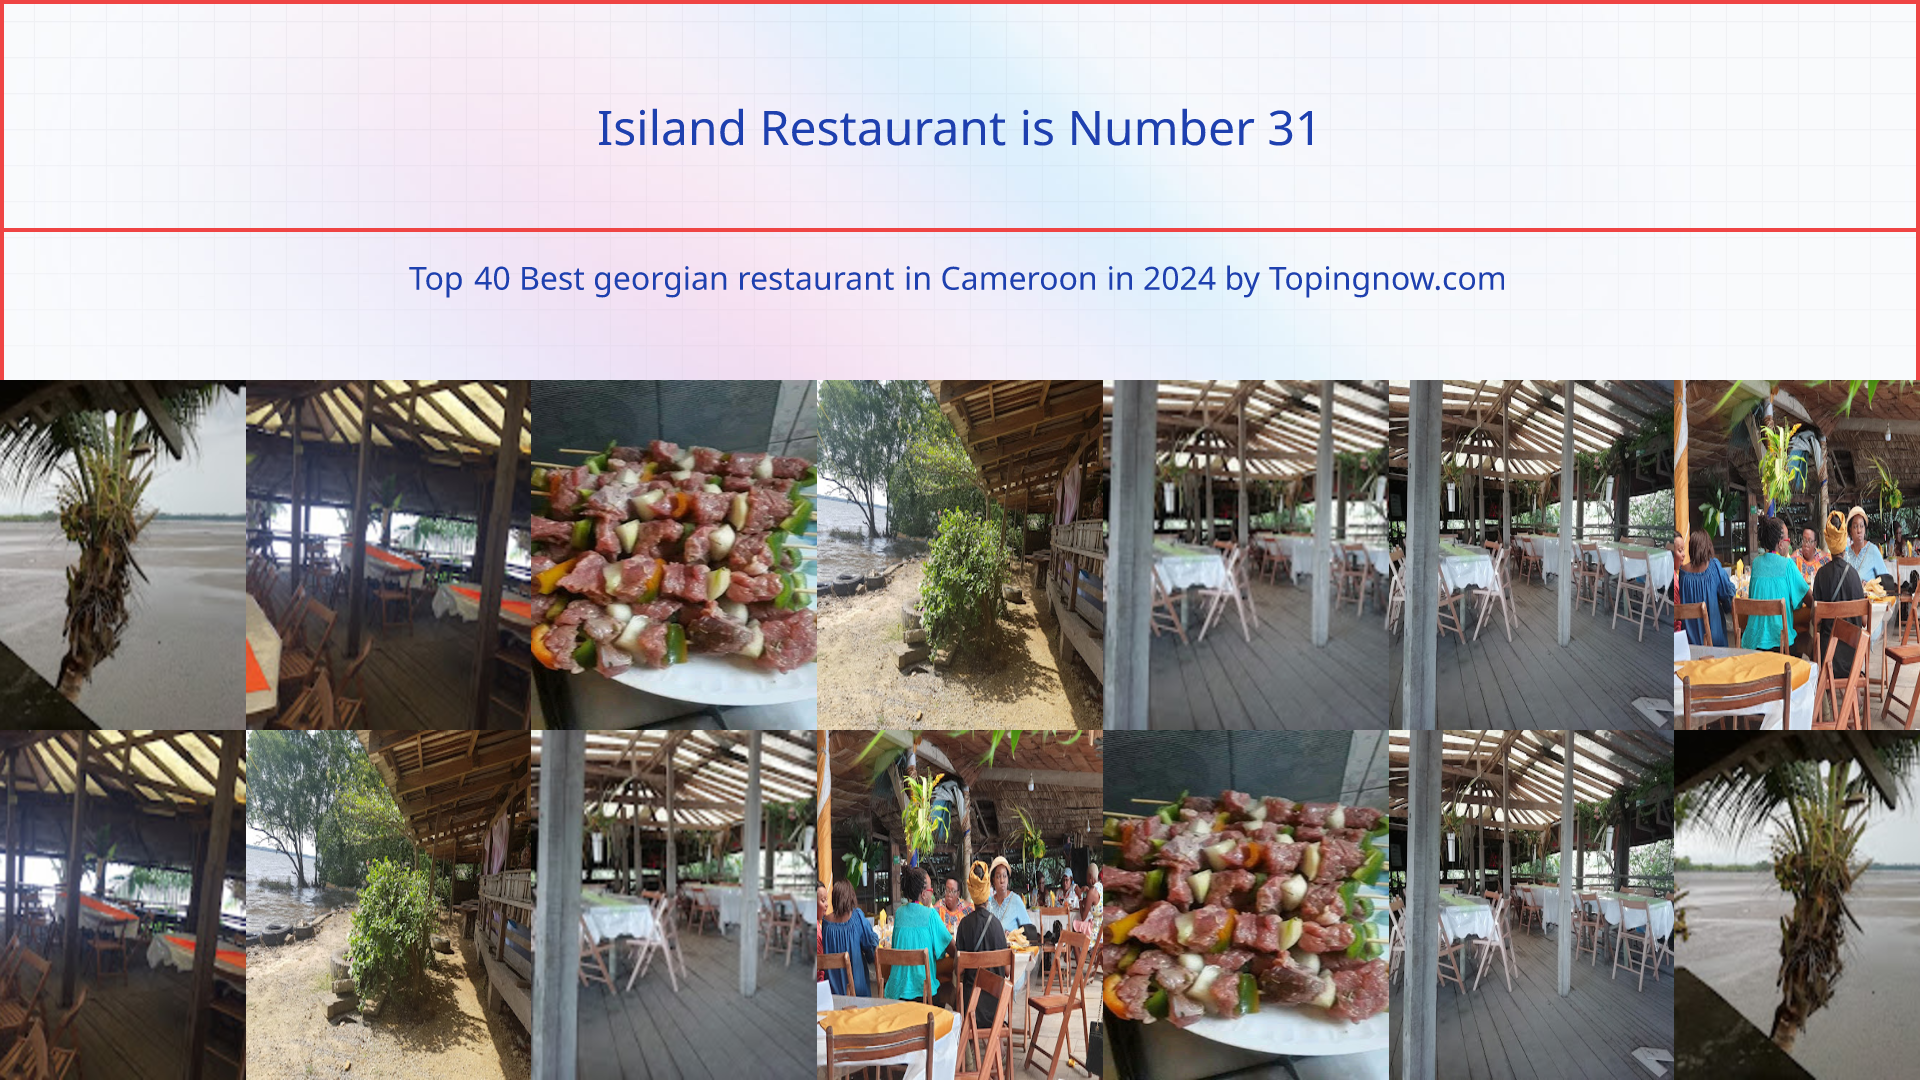 Isiland Restaurant: Top 40 Best georgian restaurant in Cameroon in 2024